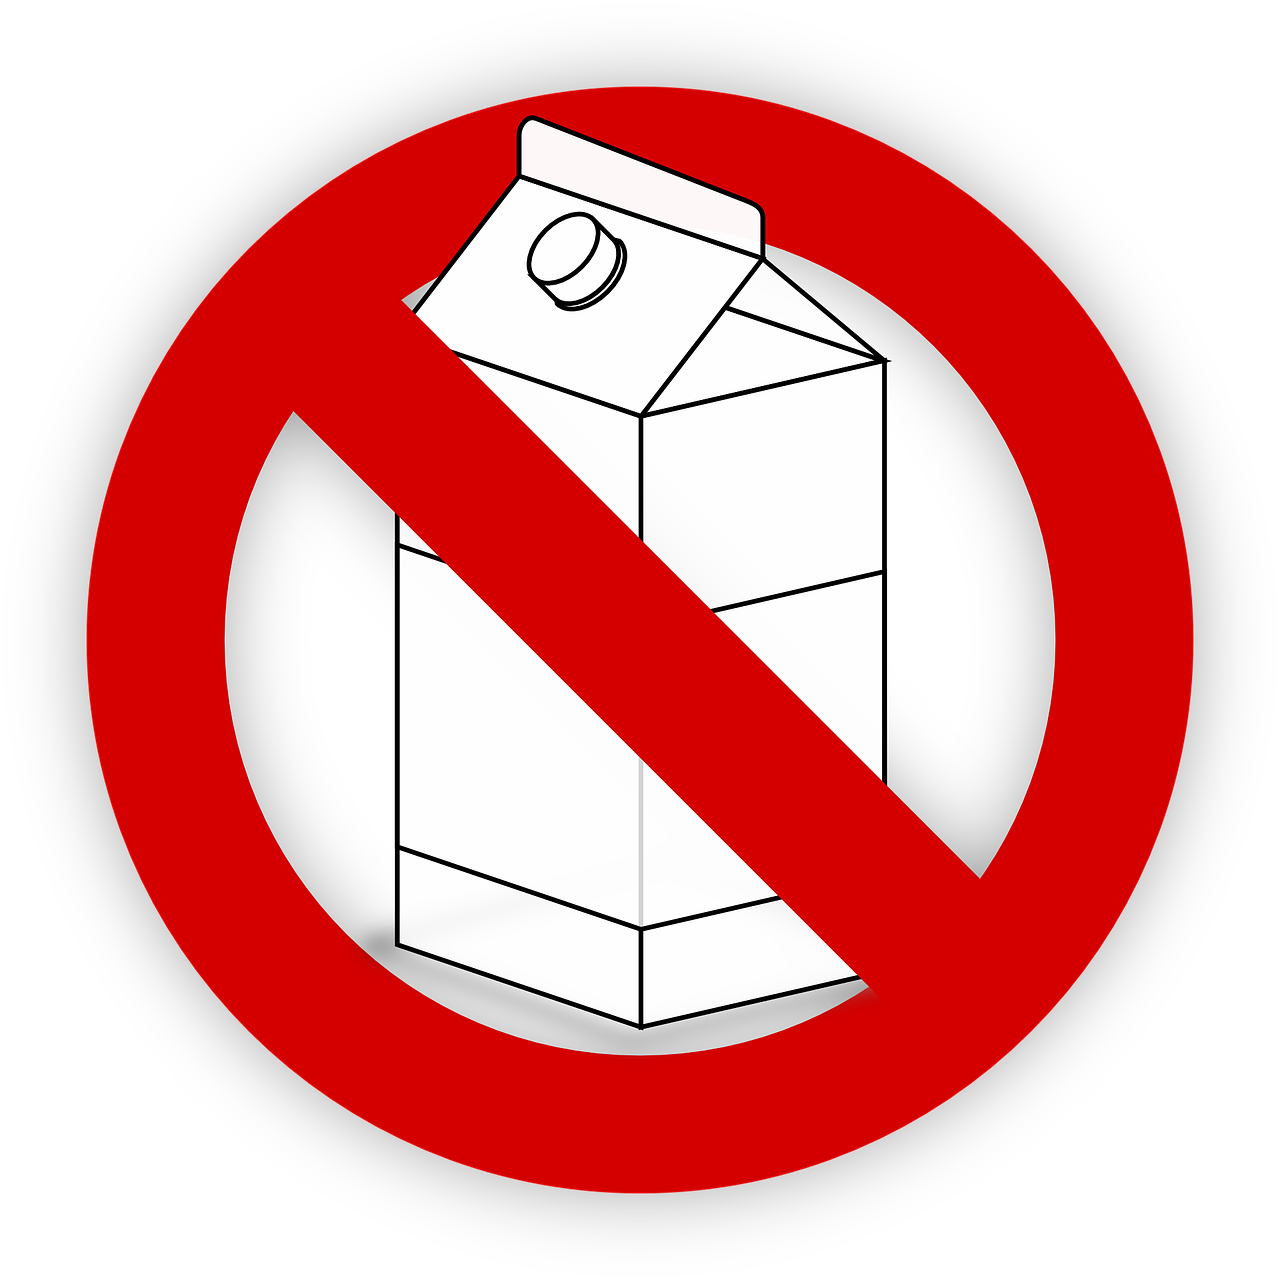 Молочная продукция запрет. Молоко перечеркнуто. Молоко запрещено. Запрет на молоко. Перечеркнутые молочные продукты.